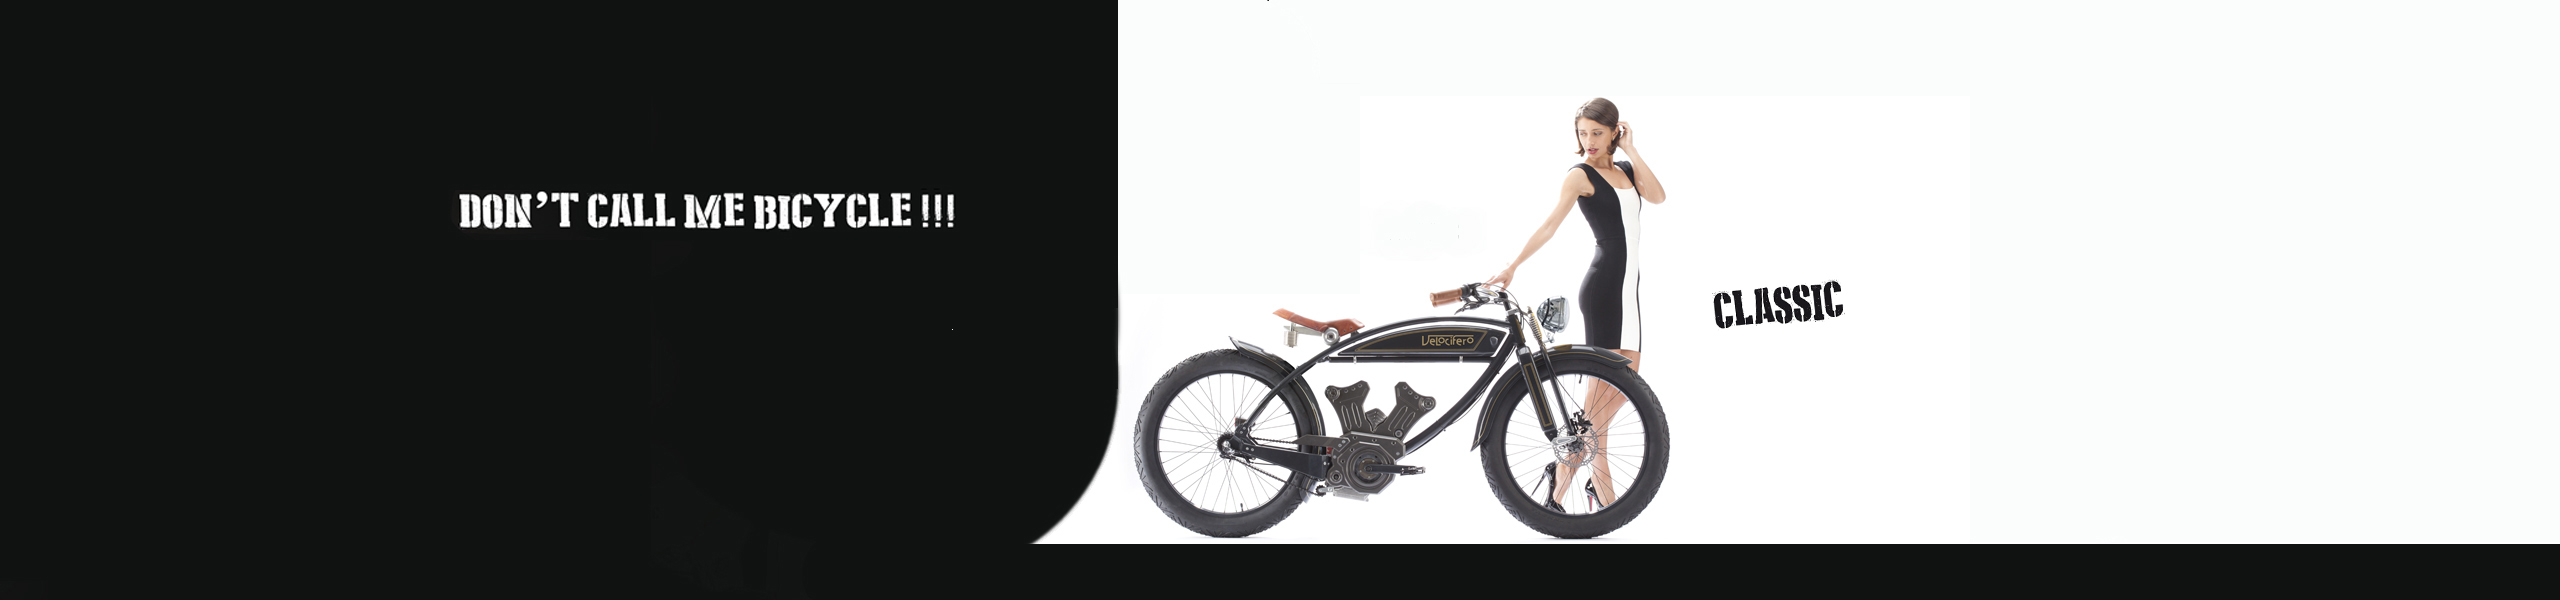 electric-bike-velocifero-collection-2016-tartarini-design-e-classic-Slider